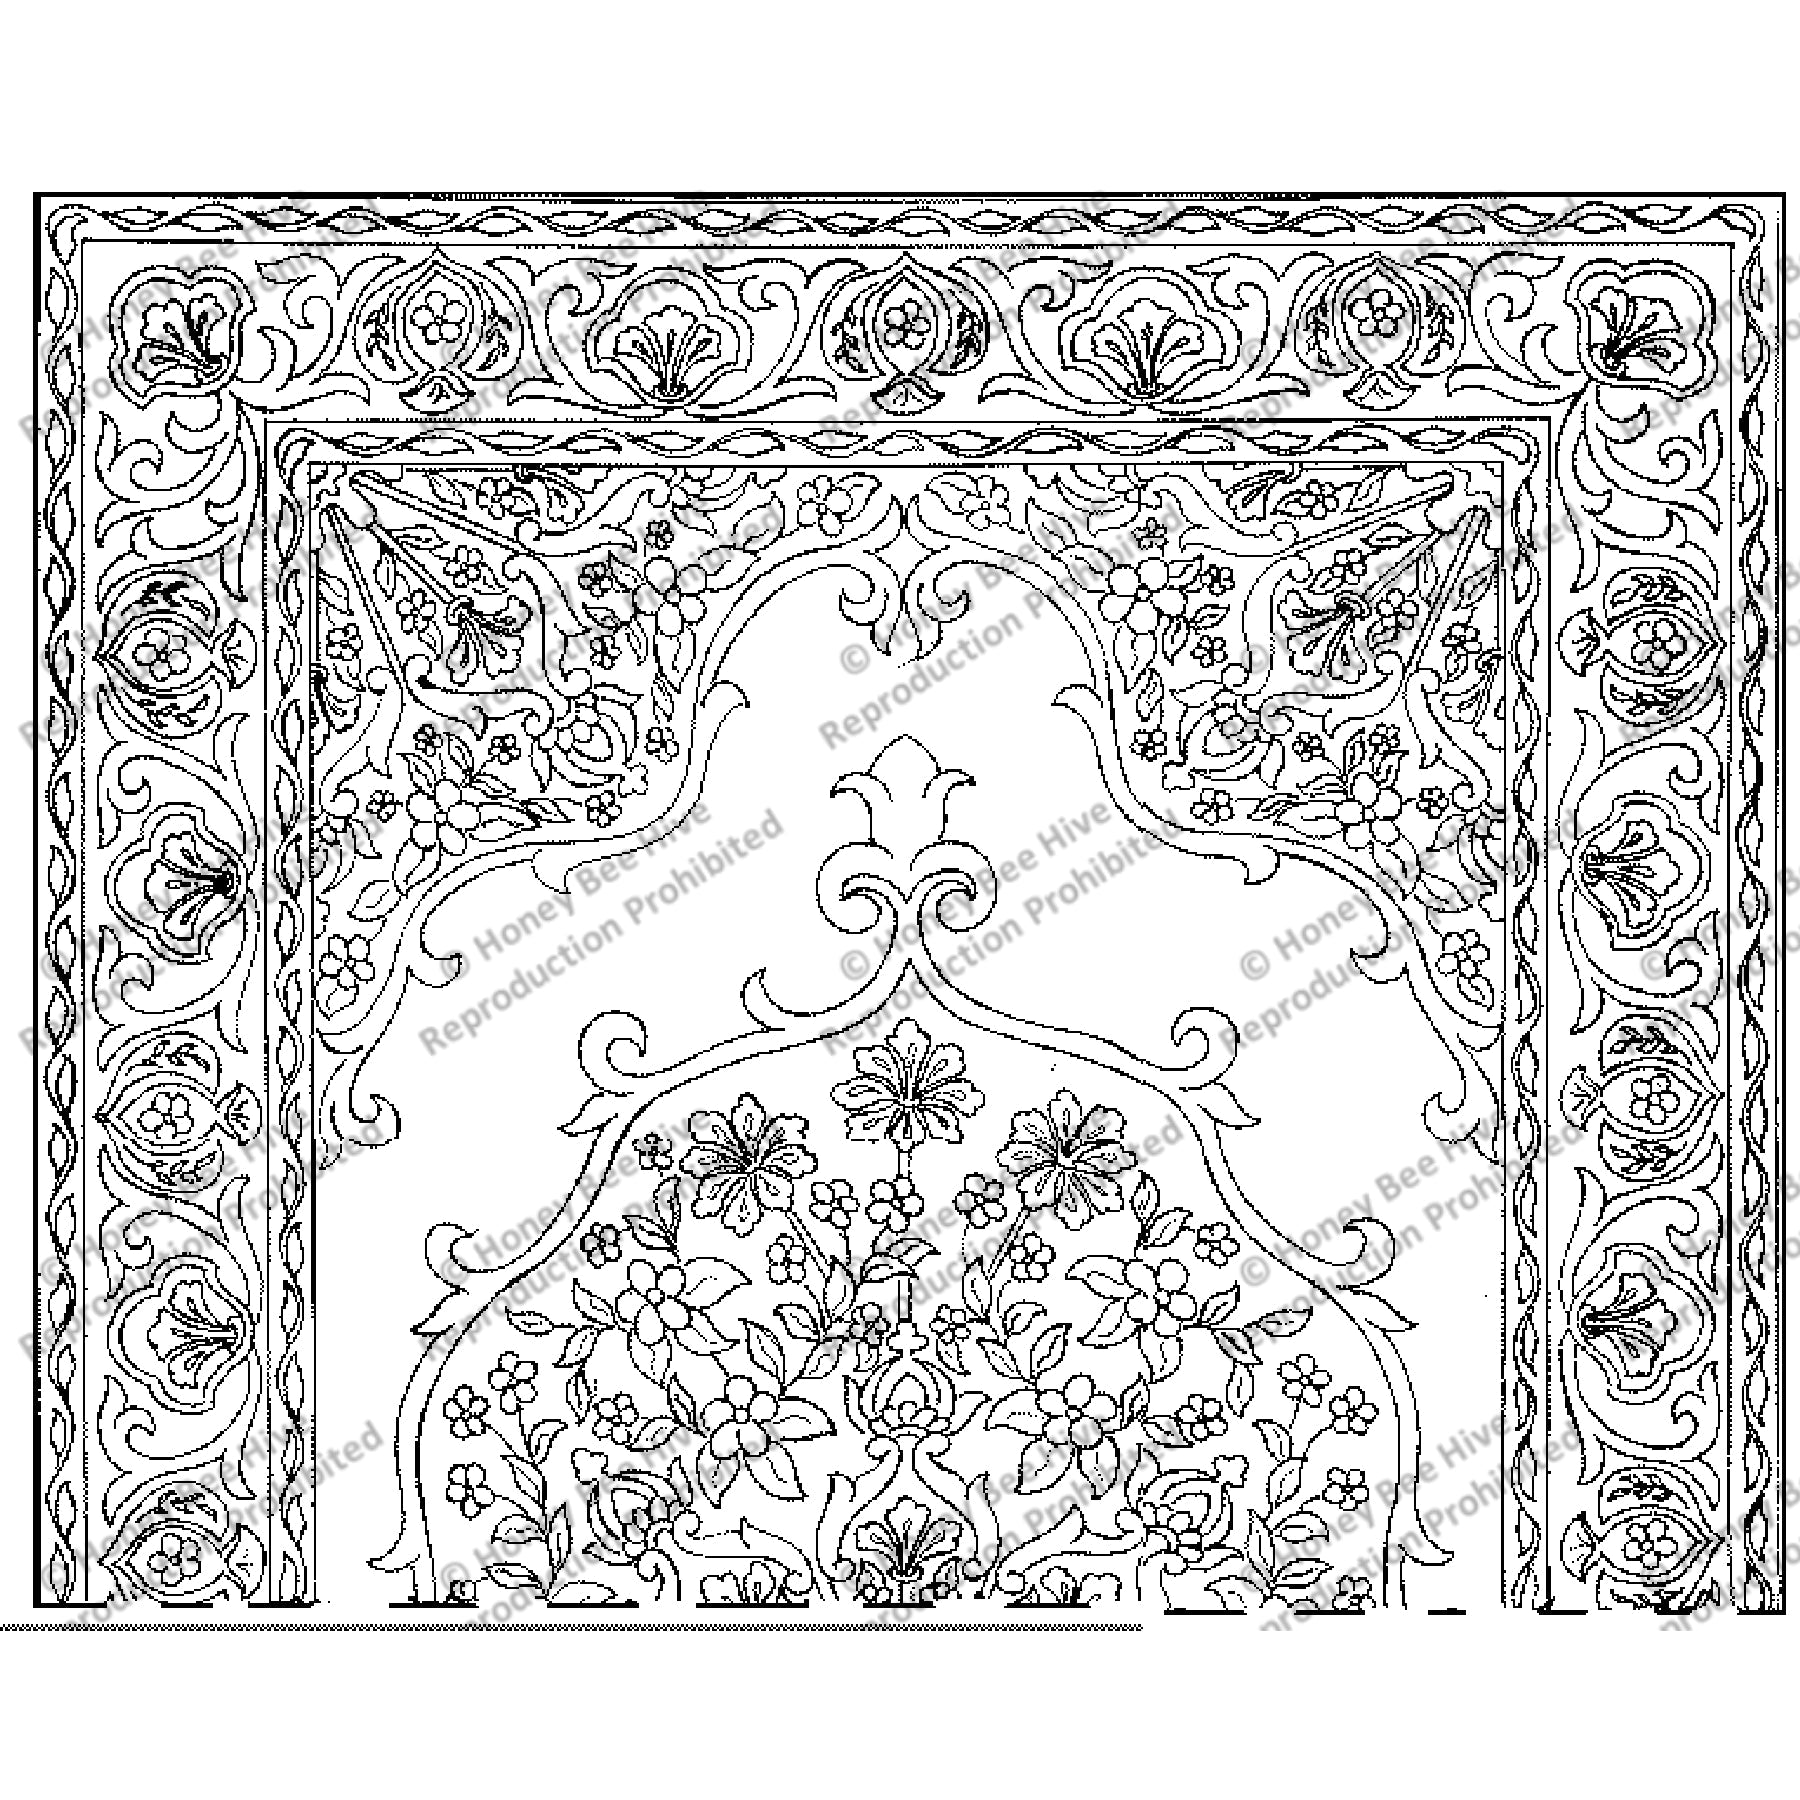 Tabriz, rug hooking pattern